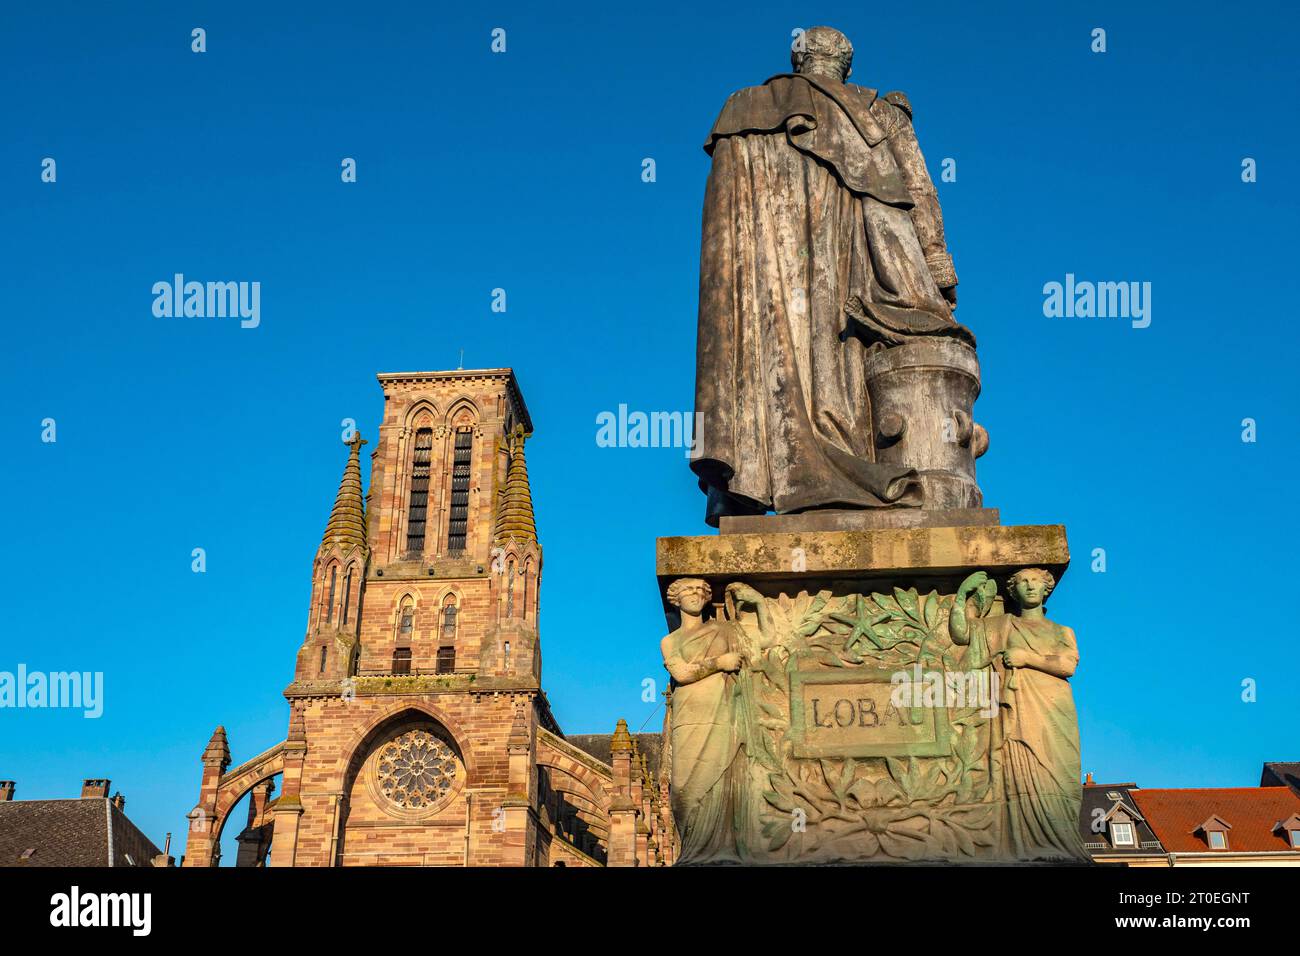 Monumento al Maresciallo Lobau e alla Chiesa dell'assunzione, eglise Notre-Dame de l'Assomption, Phalsbourg, Departement Moselle, Grand Est, Francia Foto Stock